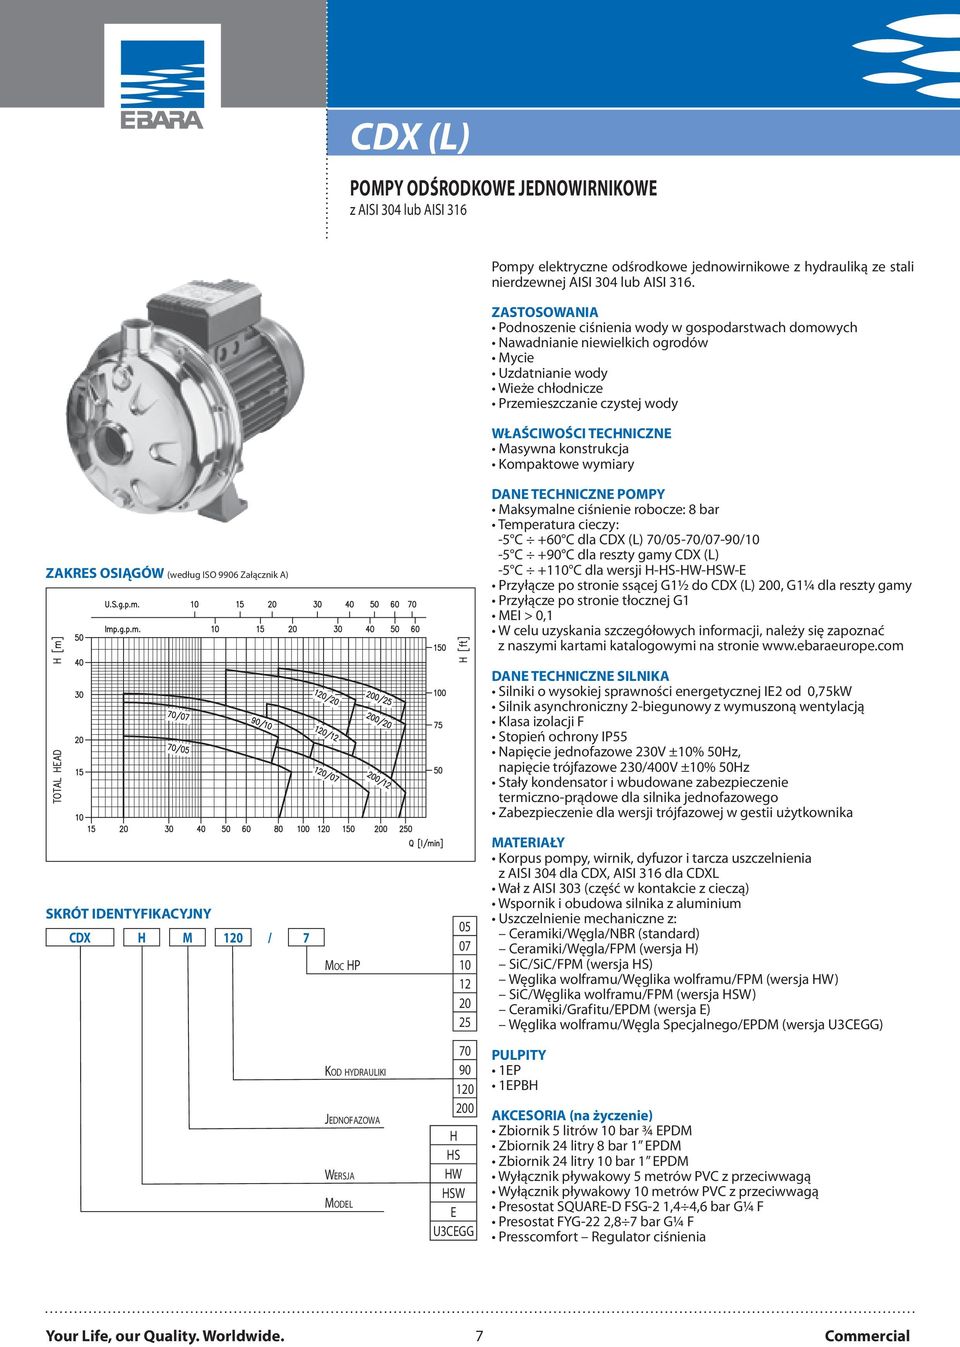 konstrukcja Kompaktowe wymiary ZAKRES OSIĄGÓW (według ISO 9906 Załącznik A) DANE TECHNICZNE POMPY Maksymalne ciśnienie robocze: 8 bar Temperatura cieczy: -5 C +60 C dla CDX (L) 70/05-70/07-90/10-5 C